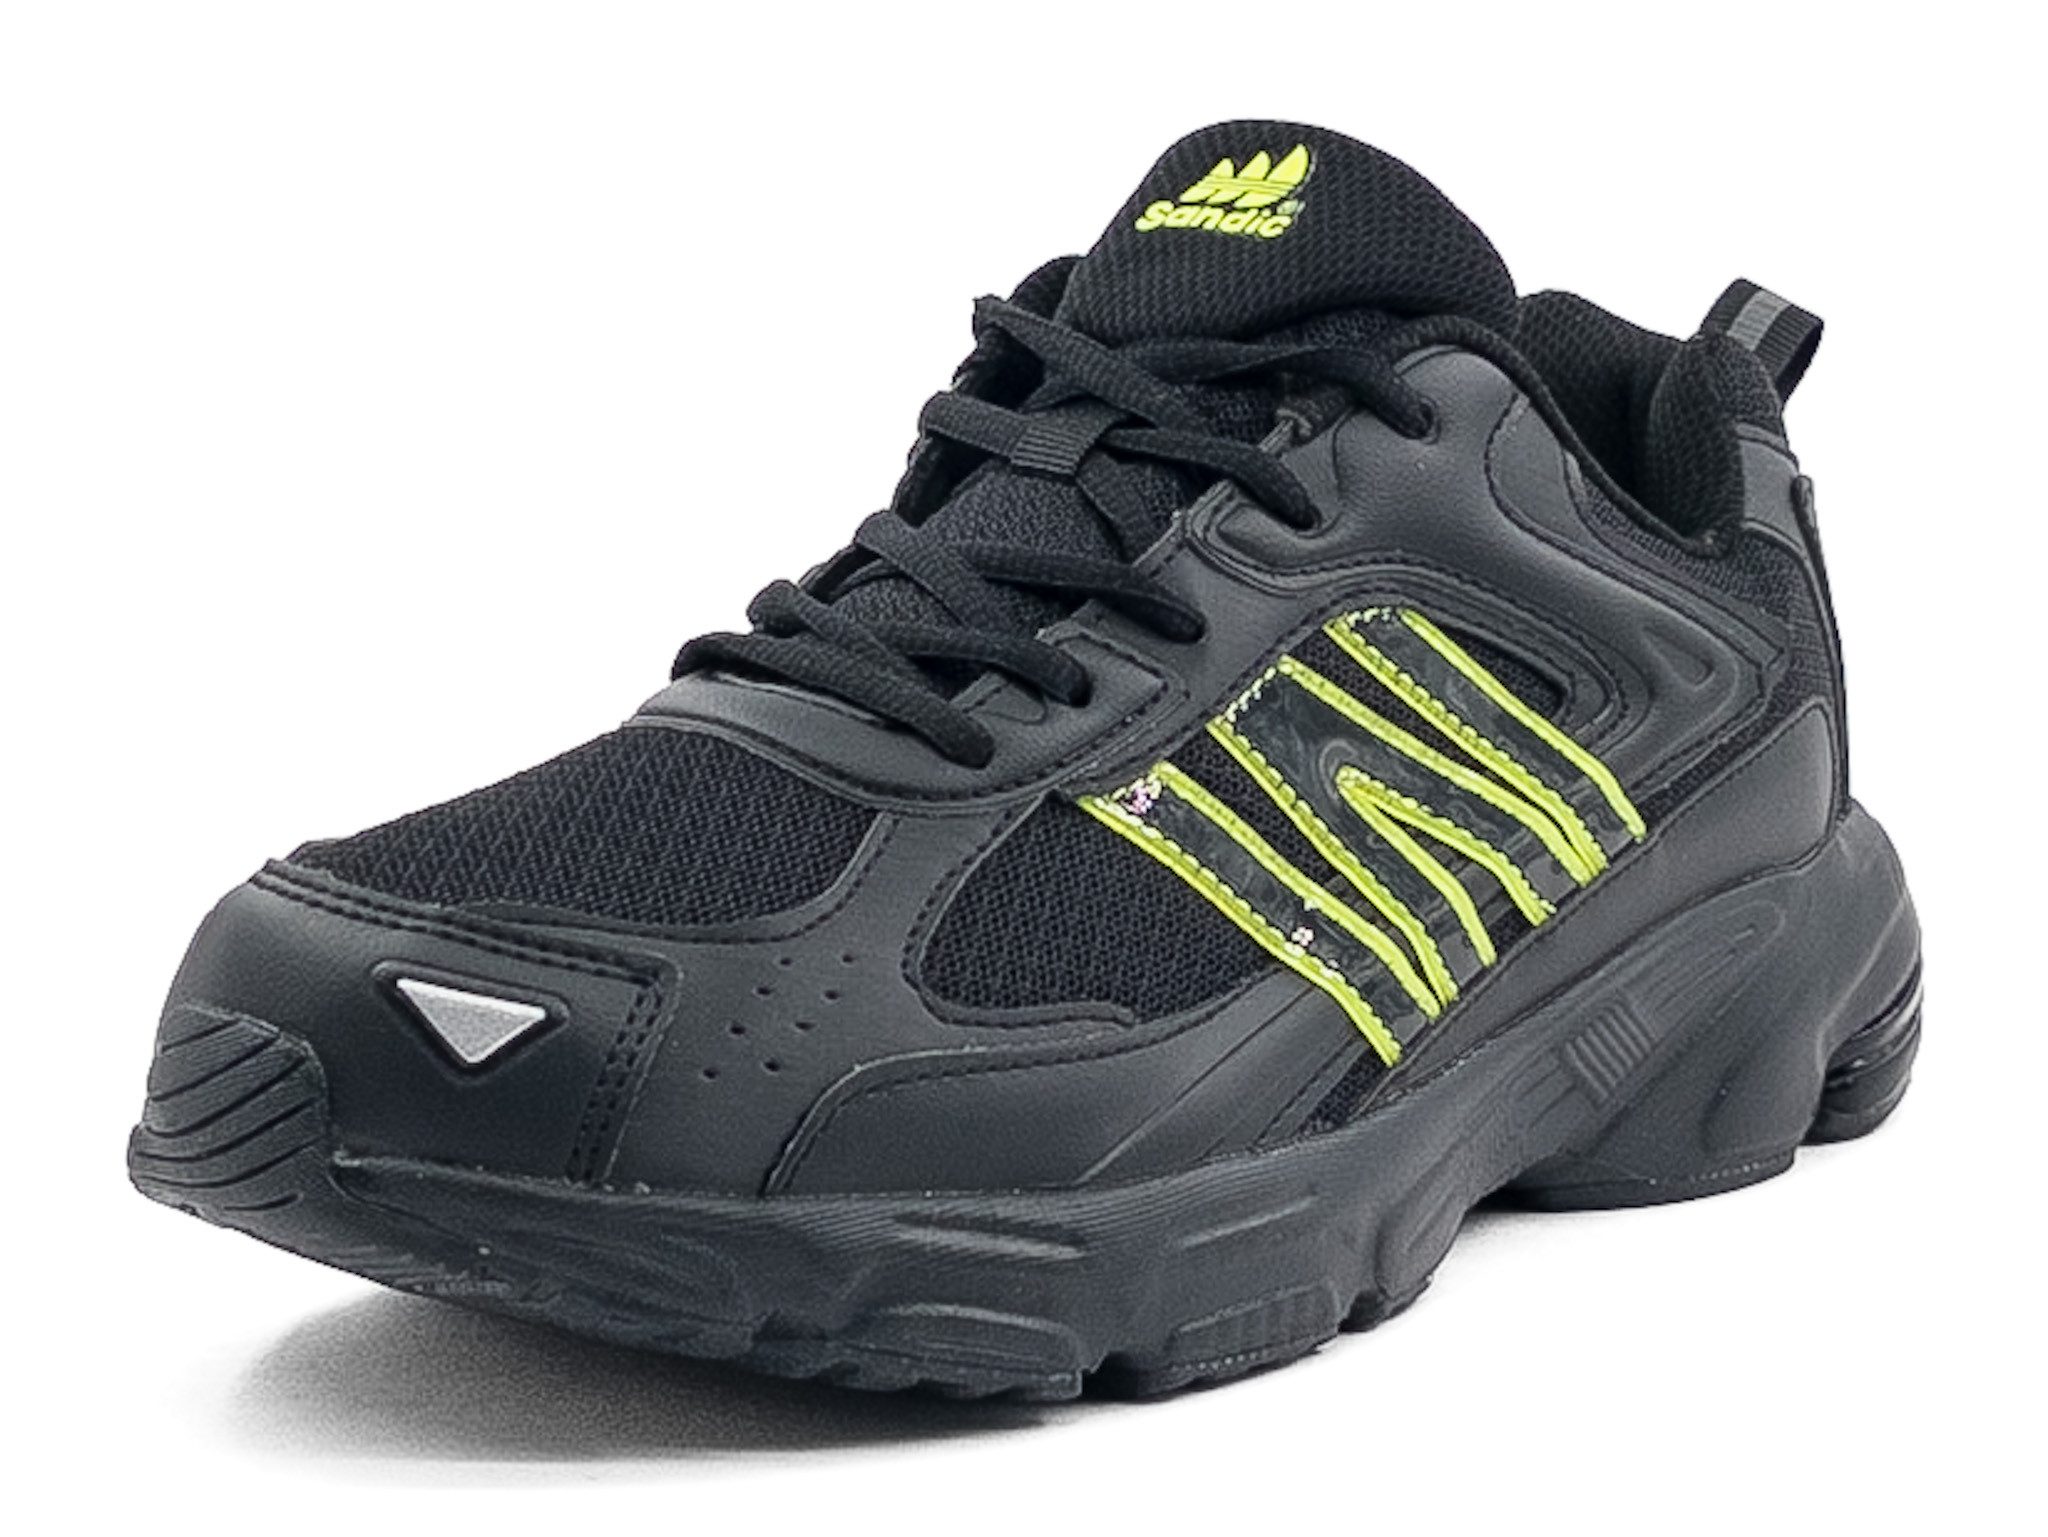 LEKANN 805 Sportschuhe leichte Sneaker atmungsaktive Turnschuhe Unisex Laufschuh